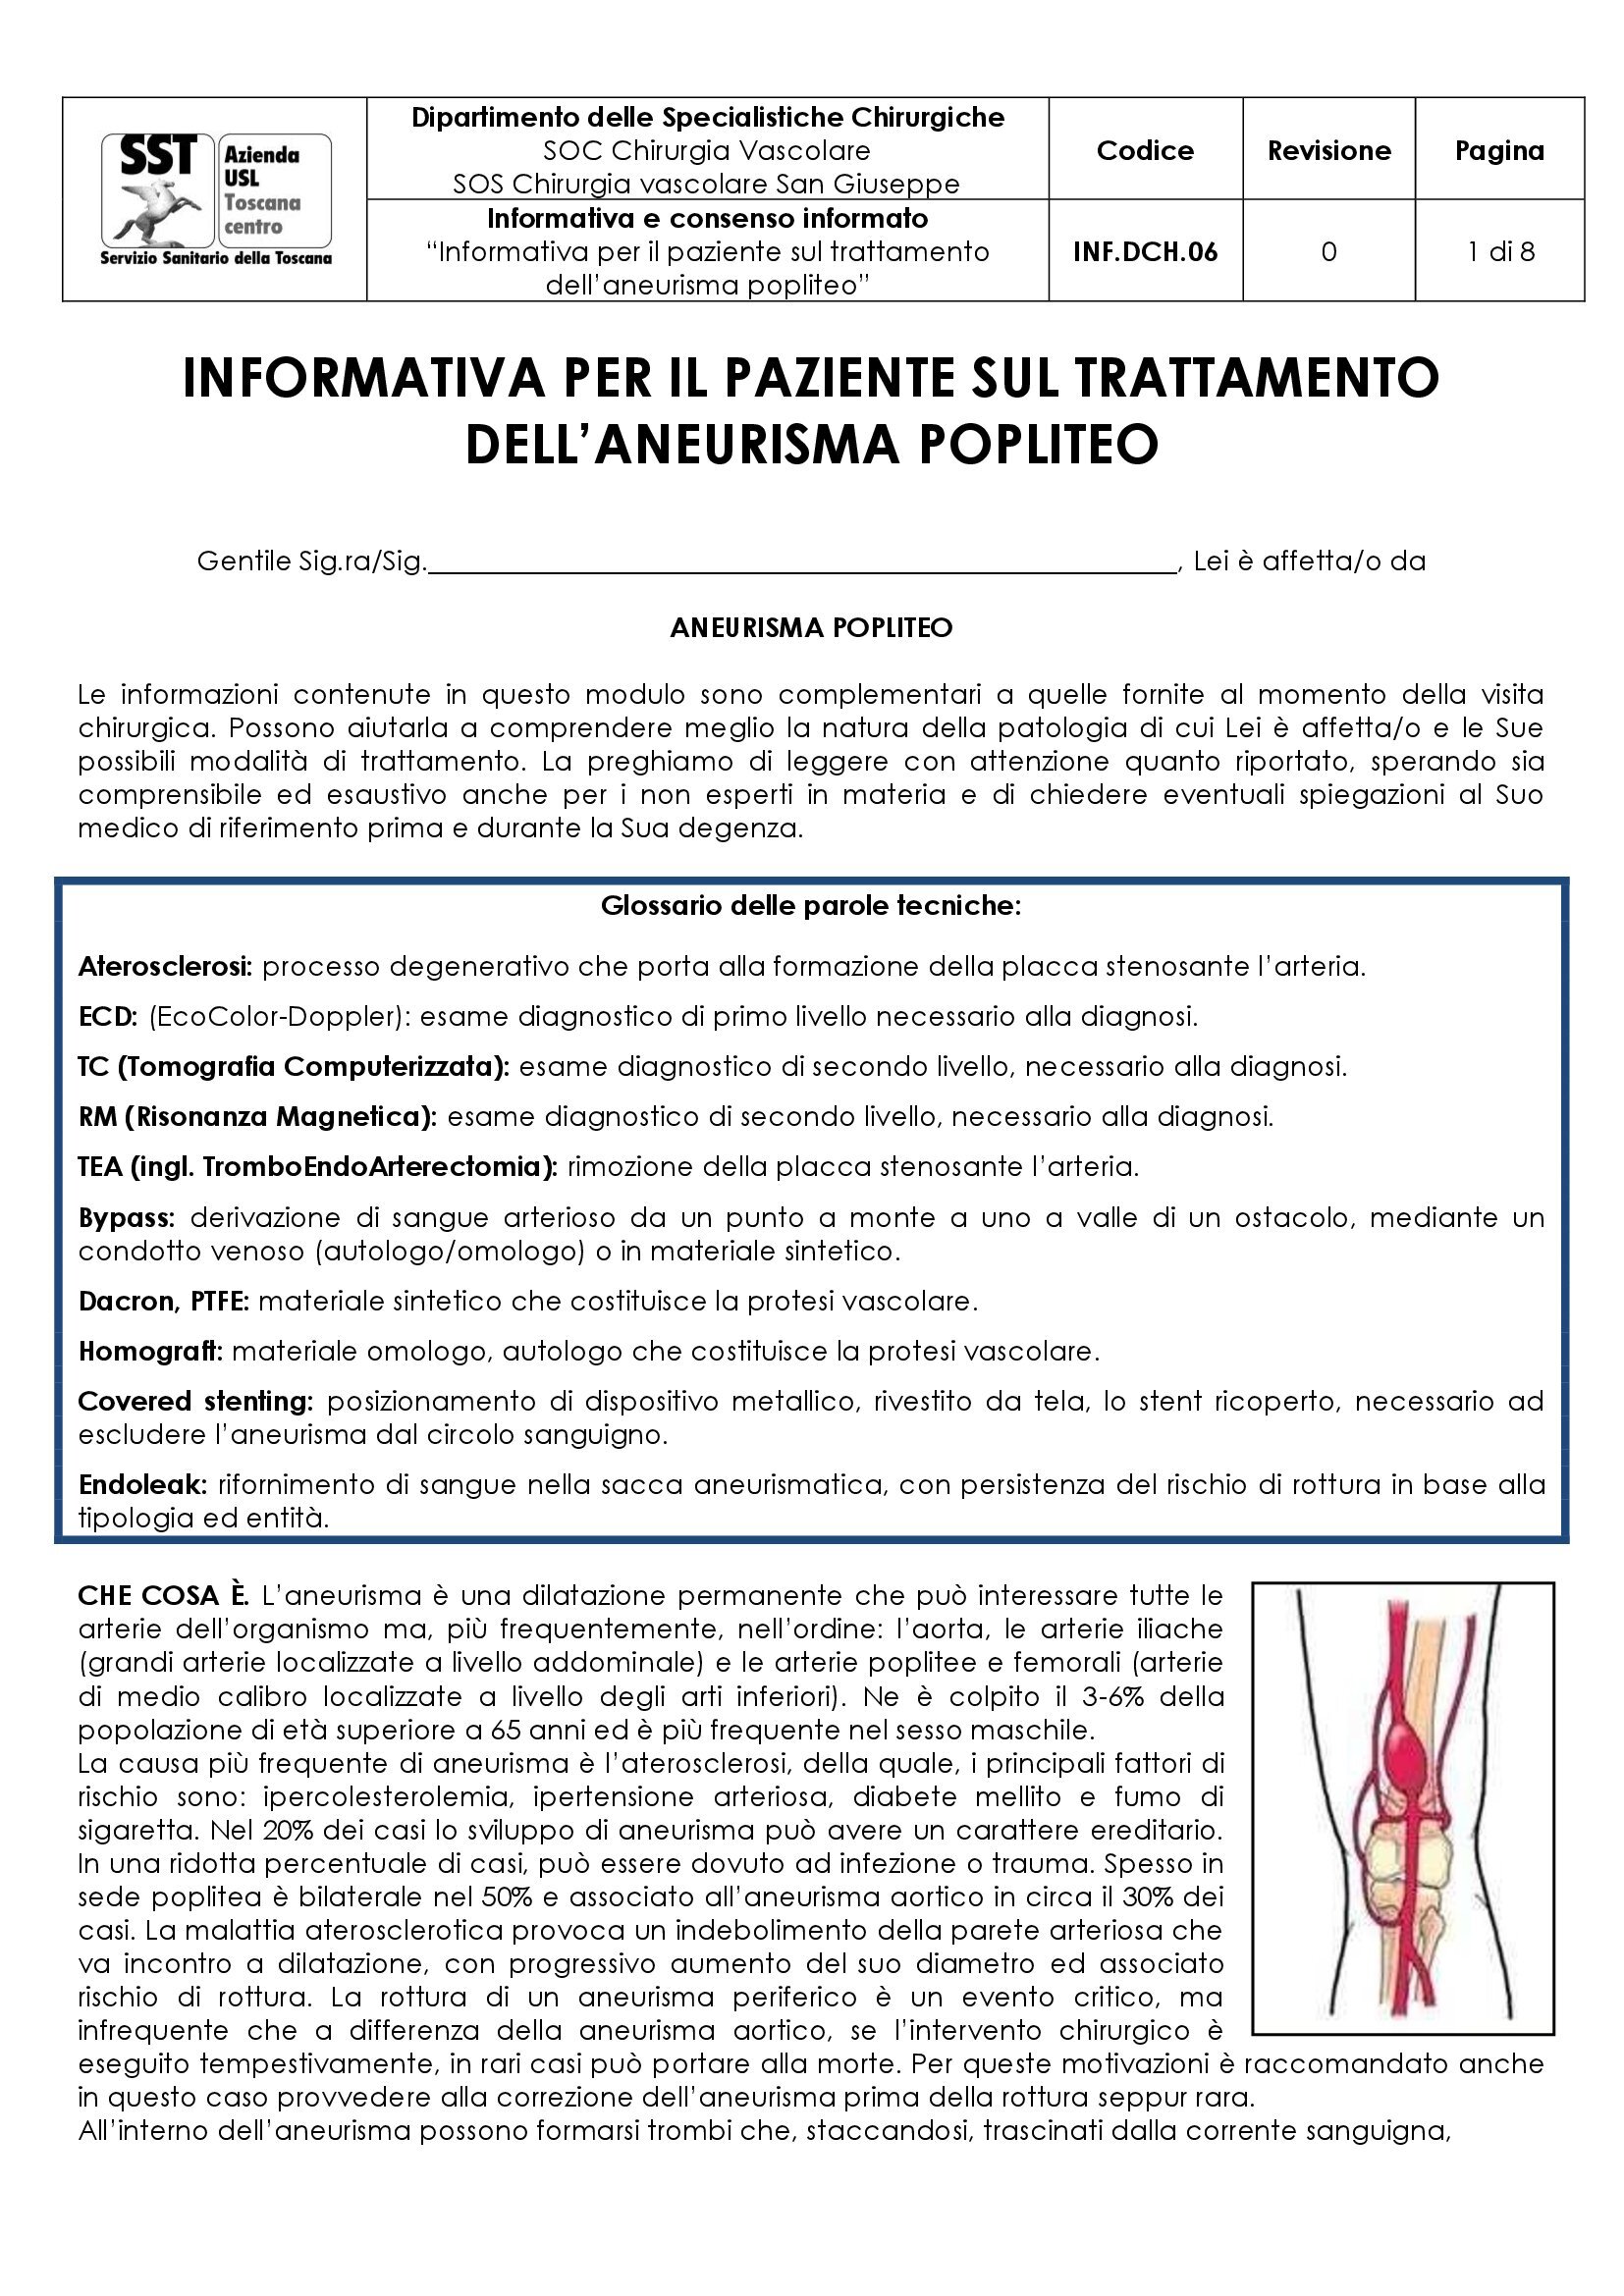 INF.DCH.06 “Informativa per il paziente sul trattamento dell’aneurisma popliteo”